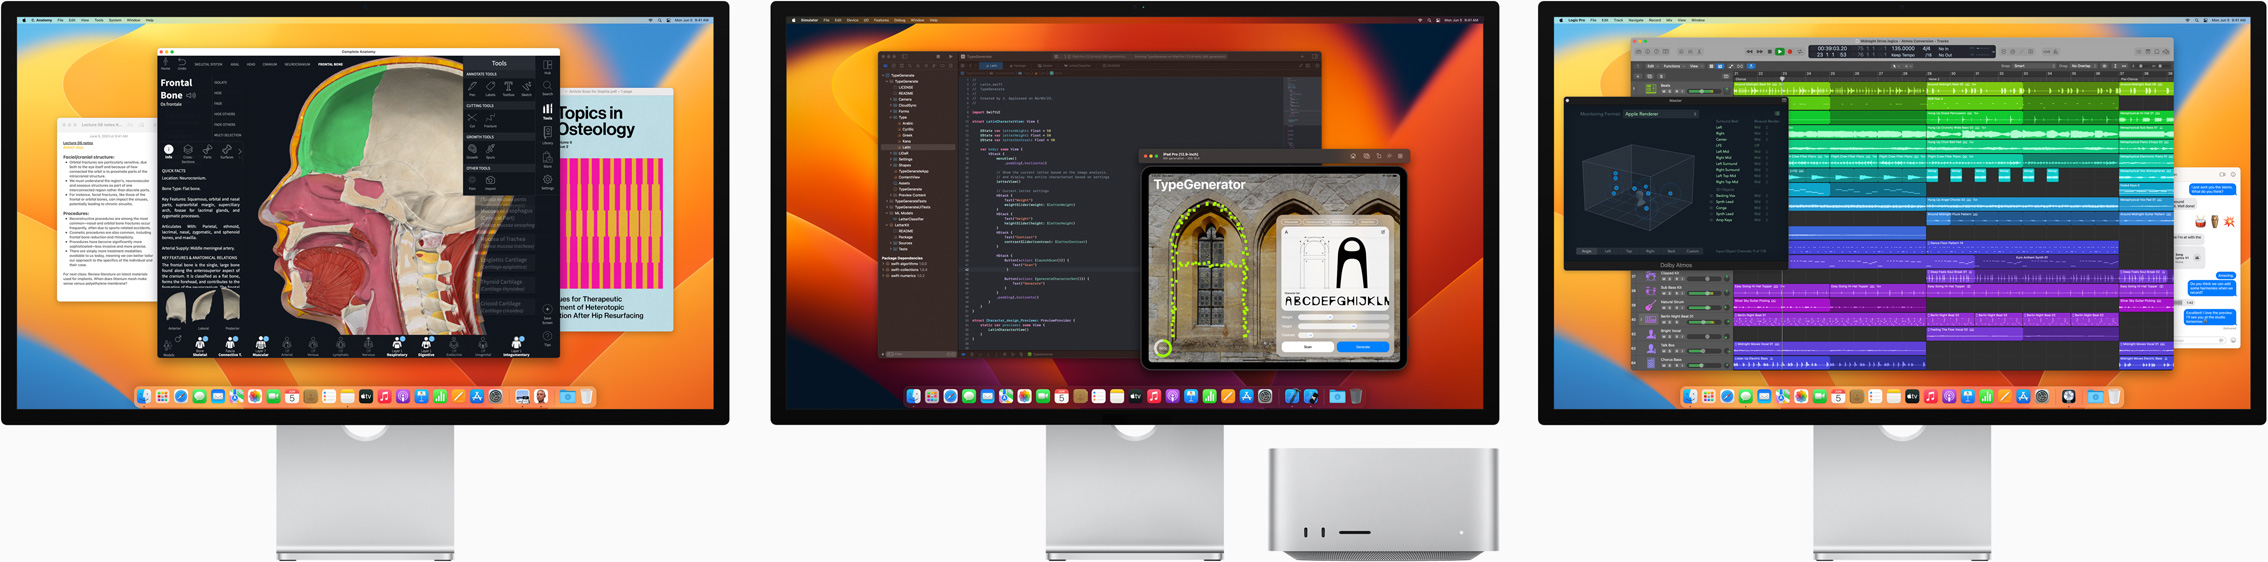 Mac Studio ja kolm Studio Displayd, mis näitavad ekraanil erinevaid rakendusi